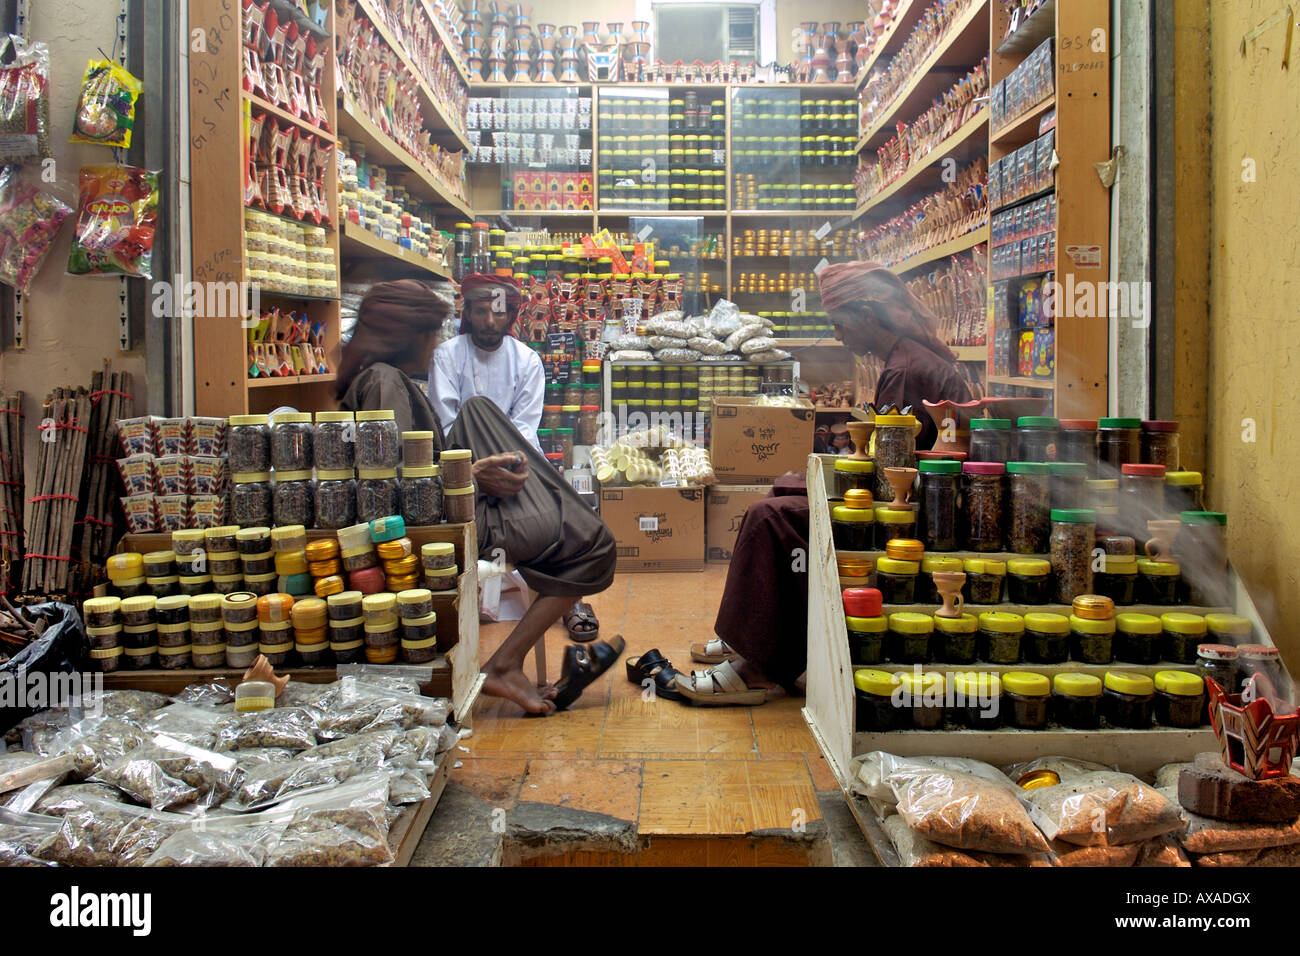 Épices et un assortiment de produits destinés à la vente dans un magasin à Mutrah souk à Mascate, la capitale du Sultanat d'Oman. Banque D'Images